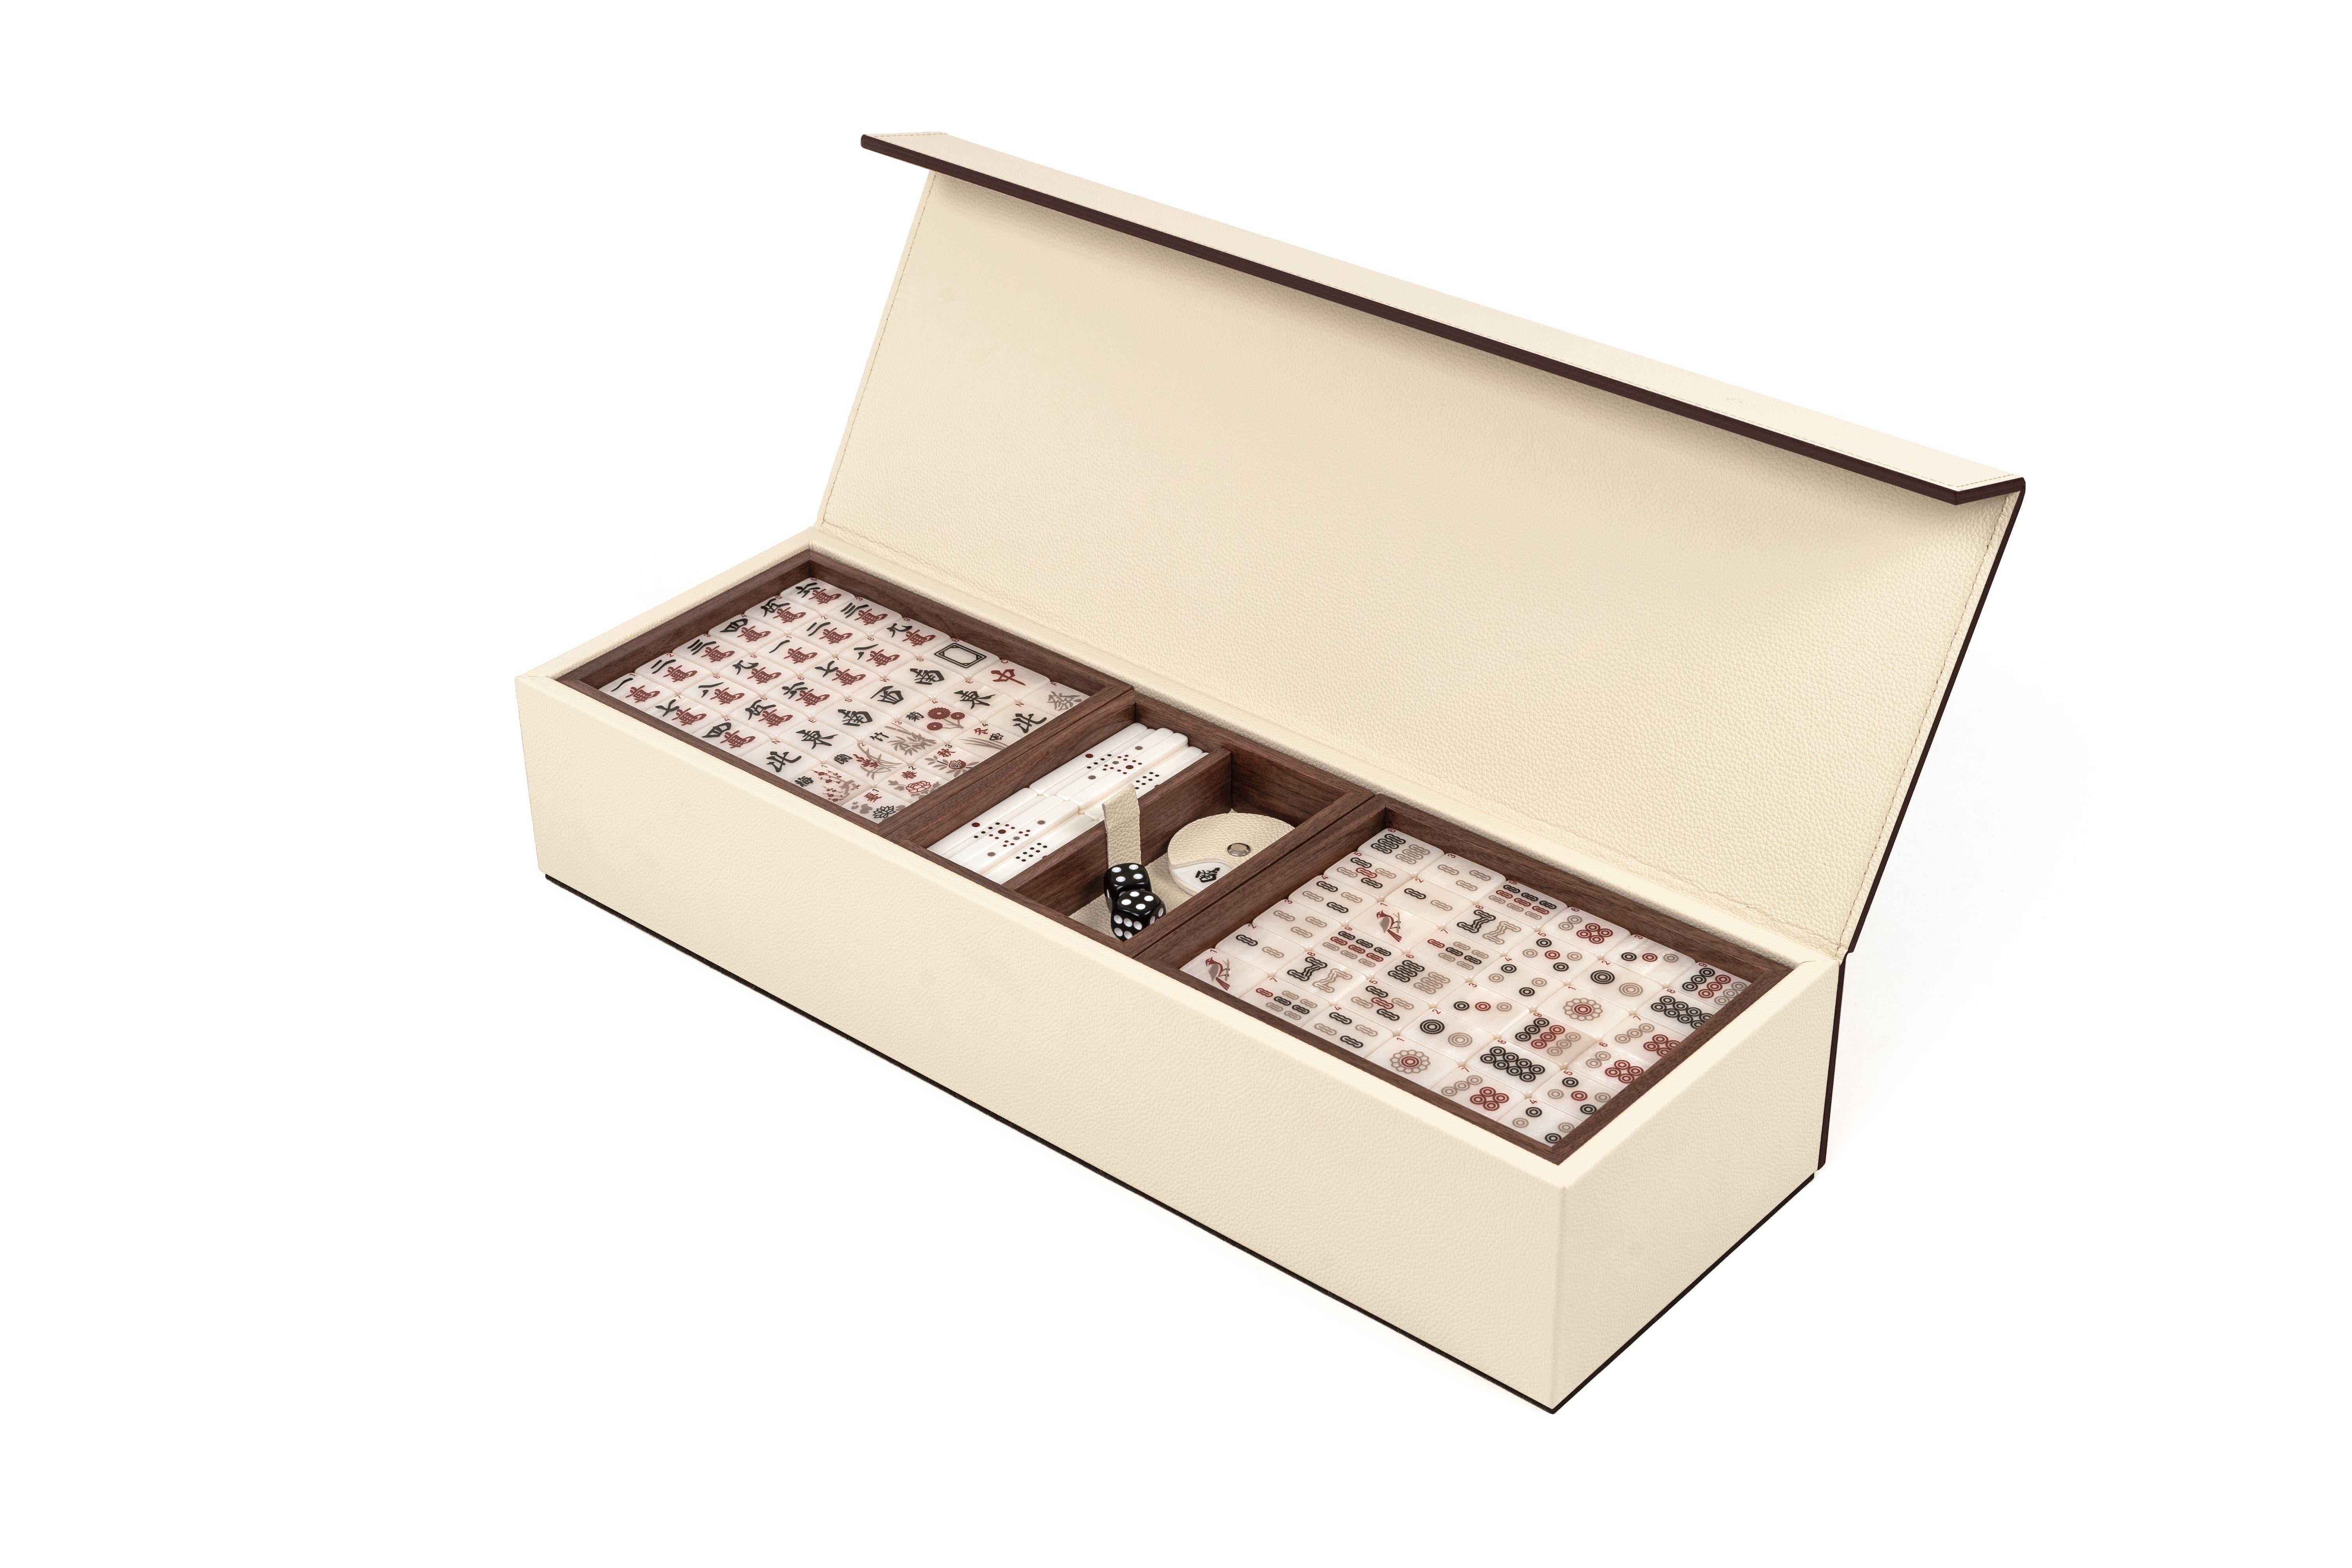 Notre tout nouveau Mahjong, une refonte complète de l'un des jeux les plus populaires et les plus joués au monde. 

Entièrement recouvert de cuir de veau véritable, notre Mahjong est présenté dans un luxueux coffret en bois avec un couvercle à